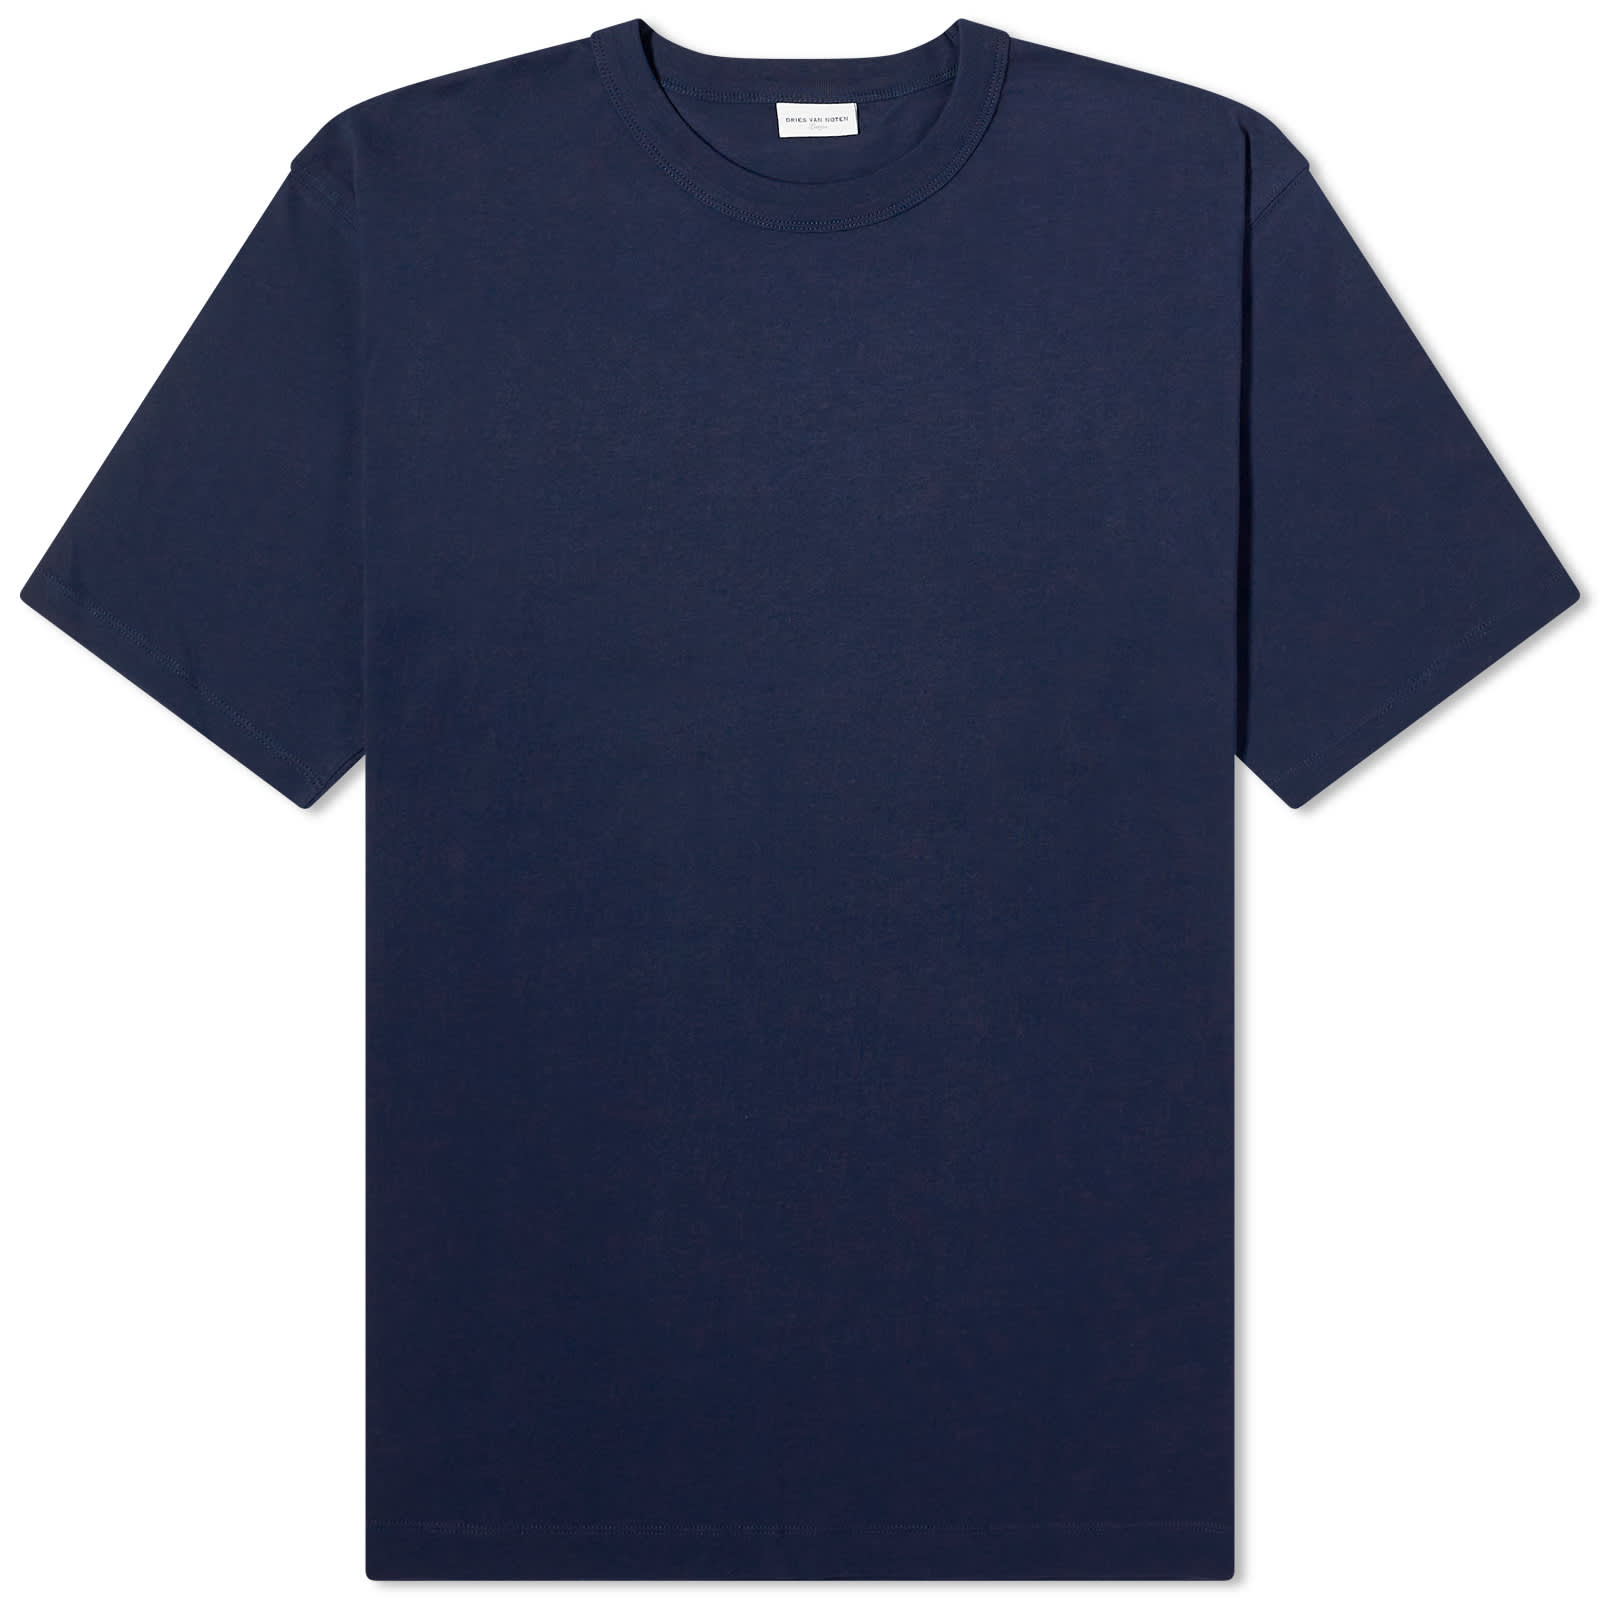 Футболка Dries Van Noten Heer Basic, темно-синий пурпурная рубашка поло с раздвинутым воротником dries van noten